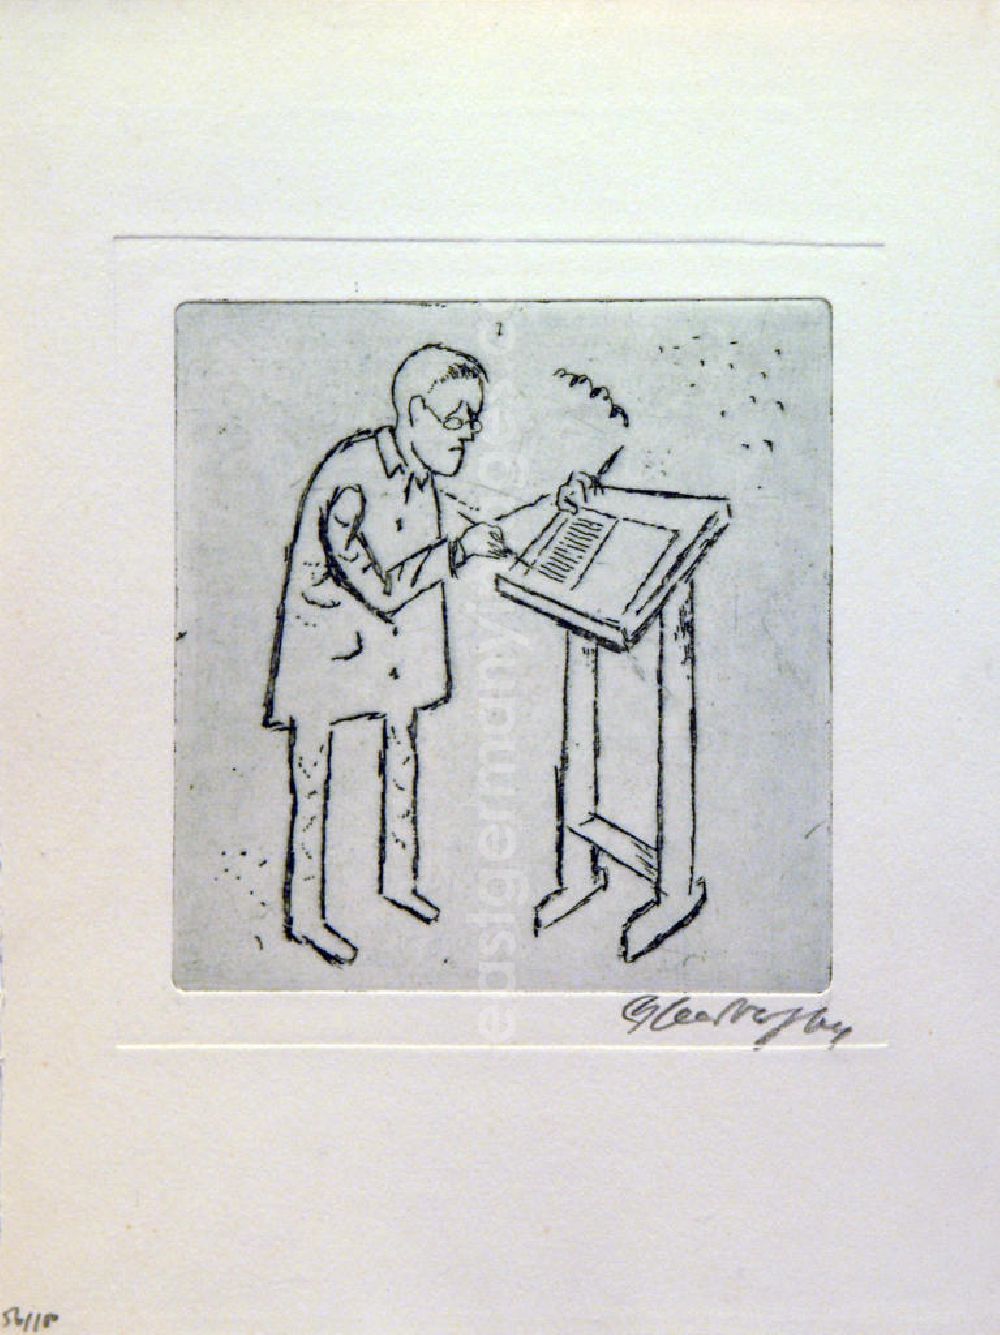 GDR photo archive: Berlin - Grafik von Herbert Sandberg über Bertolt Brecht (*10.02.1898 †14.08.1956) b.b. aus dem Jahre 1964 (Brecht im Stehen beim Schreiben am Pult) 11,1x9,8cm Radierung, handsigniert, 56/10